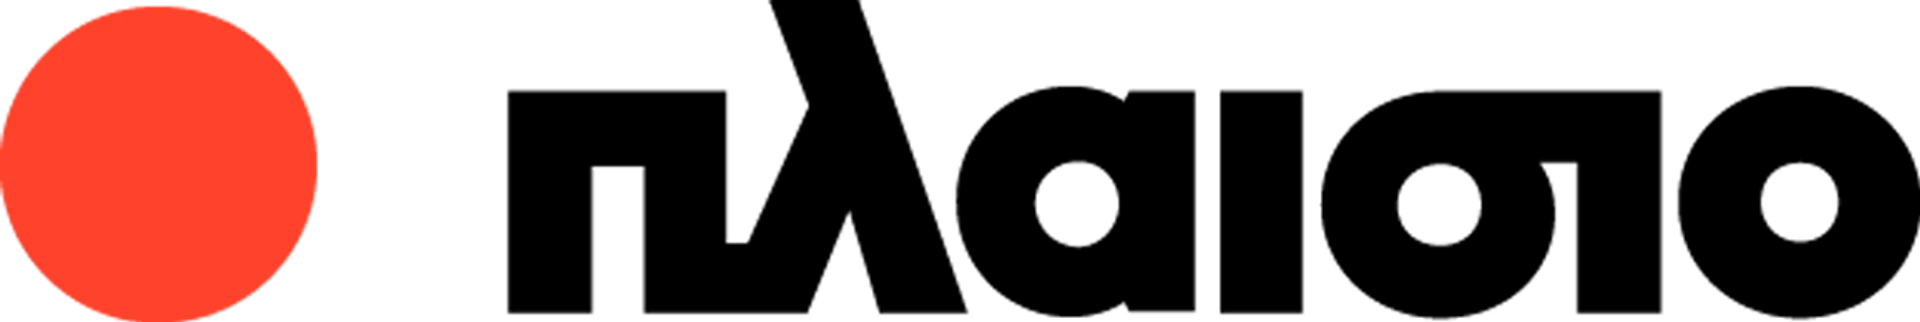 PLAISO logo